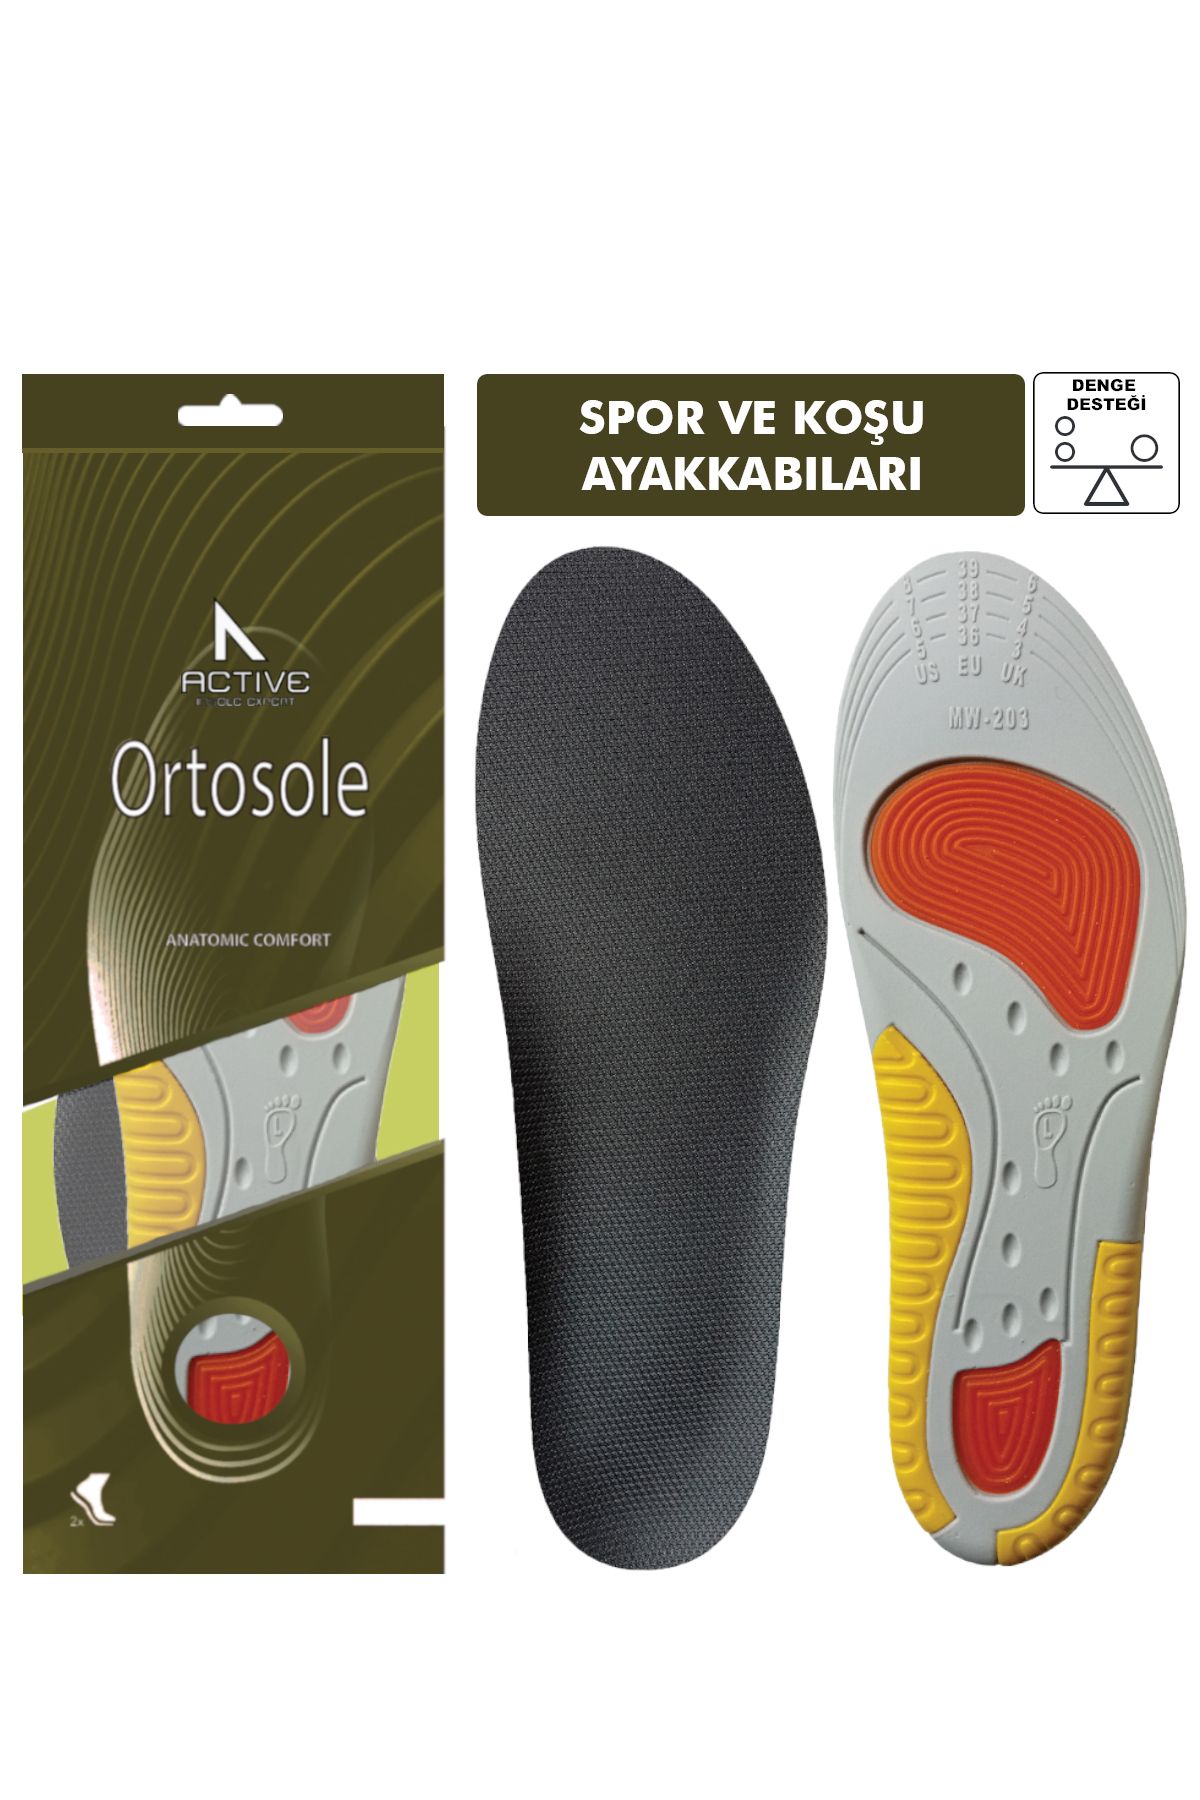 Ortosole Spor Ve Koşu Tabanlığı, Çift Taraflı Kemer Destekli, Atletik Ayakkabı Tabanı - Performans